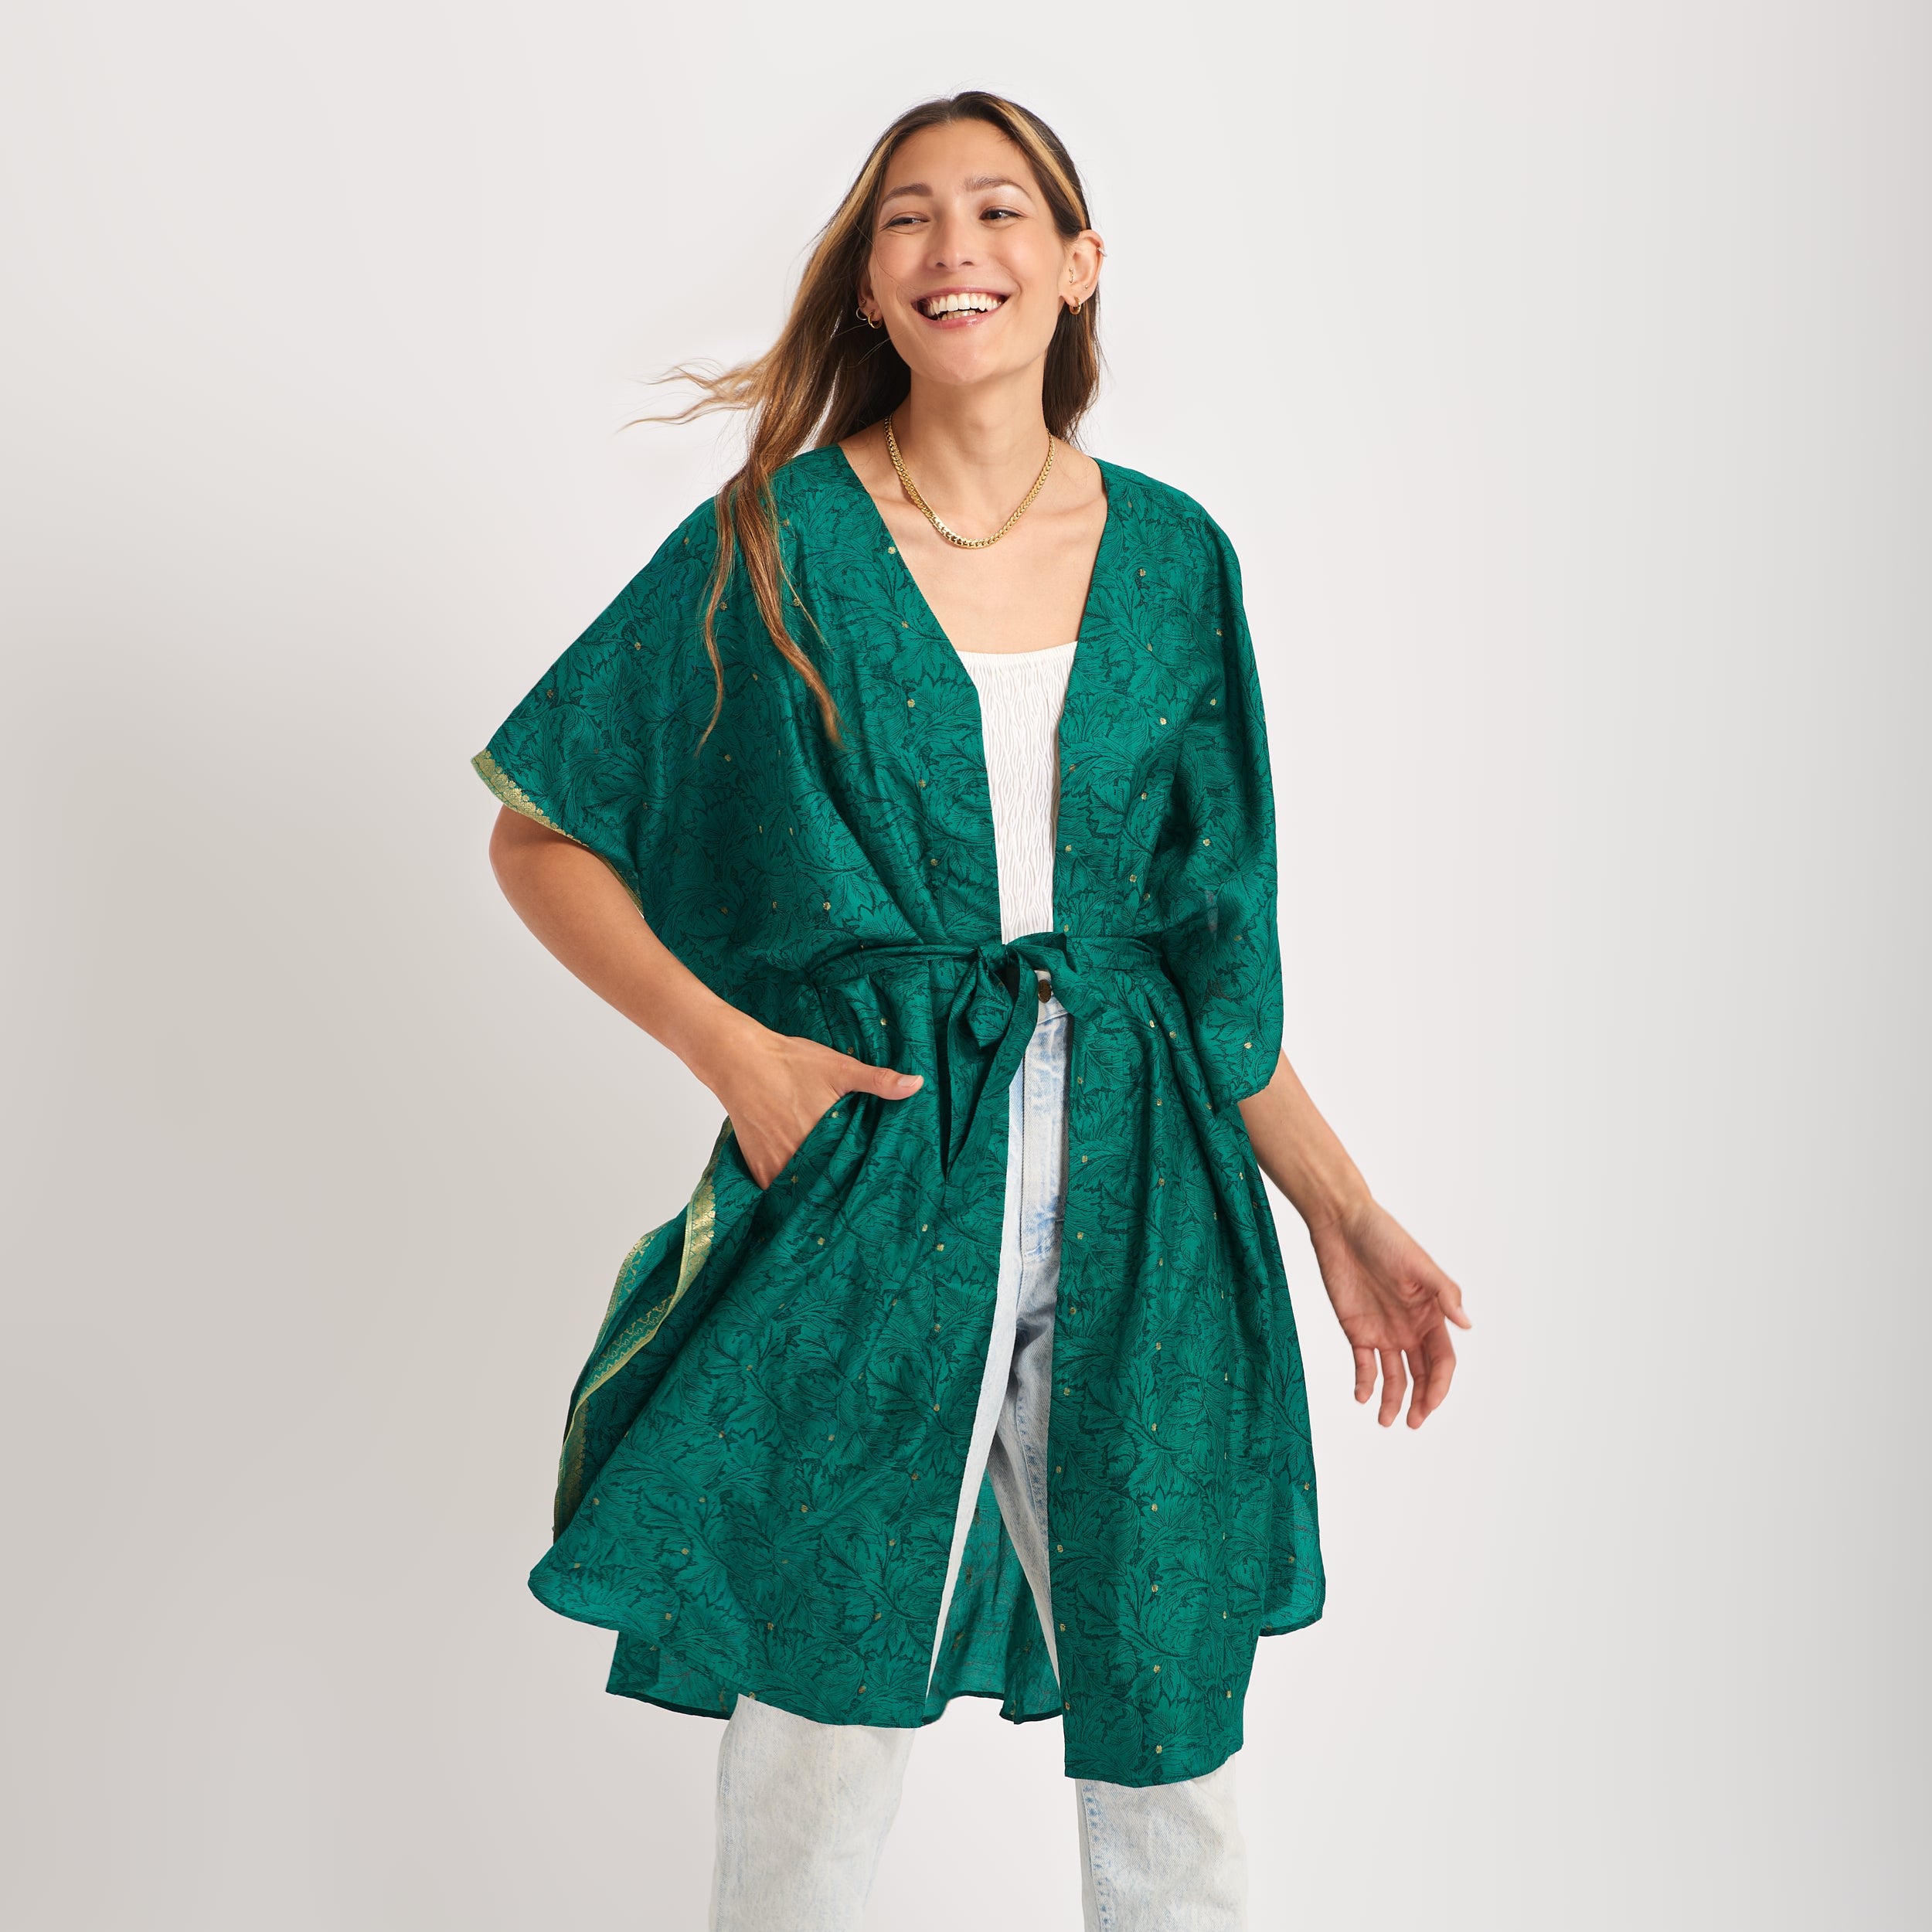 Neem - Vintage Silk Sari Emerald Green Floral Kimono Style Wrap Dress